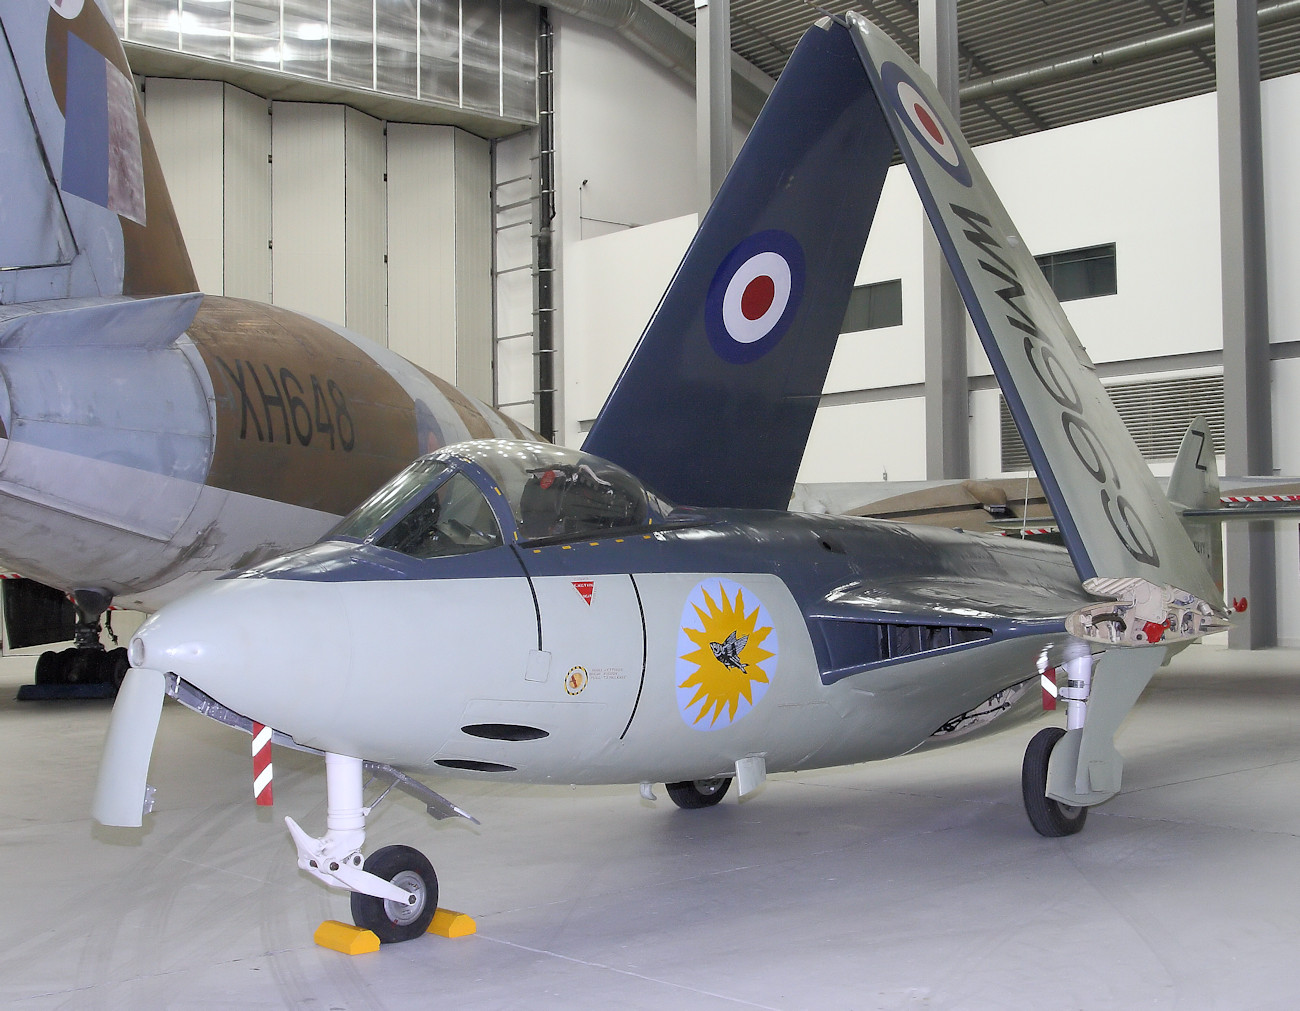 Hawker Sea Hawk - britisches Kampfflugzeug des Kalten Krieges